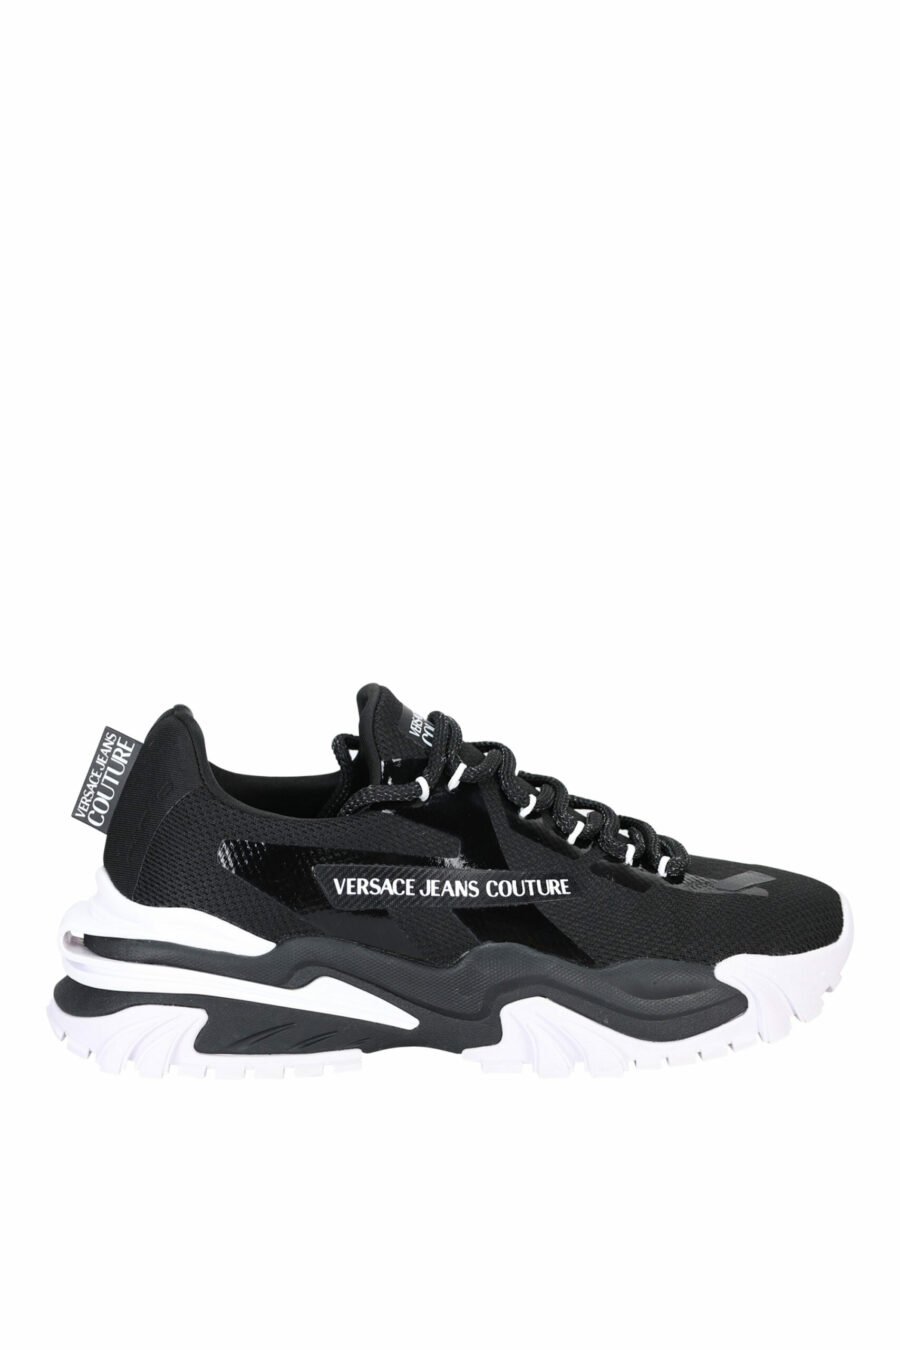 Zapatillas negras mix con minilogo blanco y suela blanca - 8052019489880 scaled